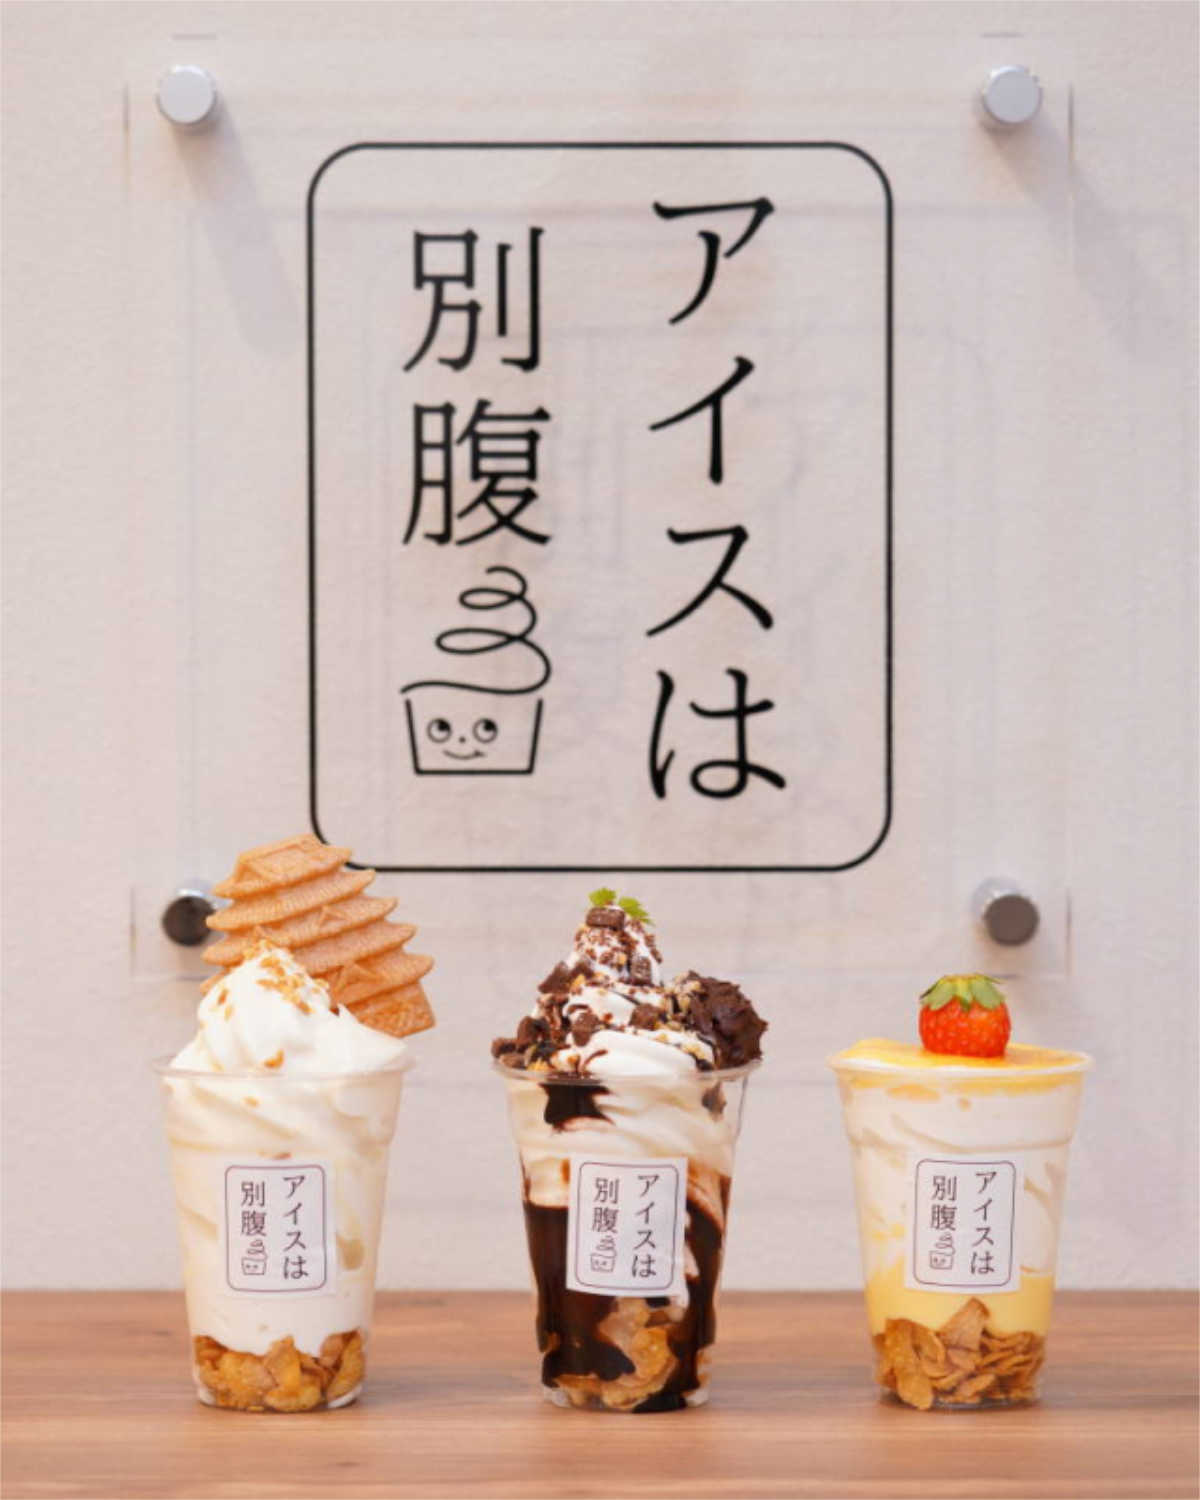 夜パフェ専門店『アイスは別腹』が垂水区にオープン　神戸市 [画像]